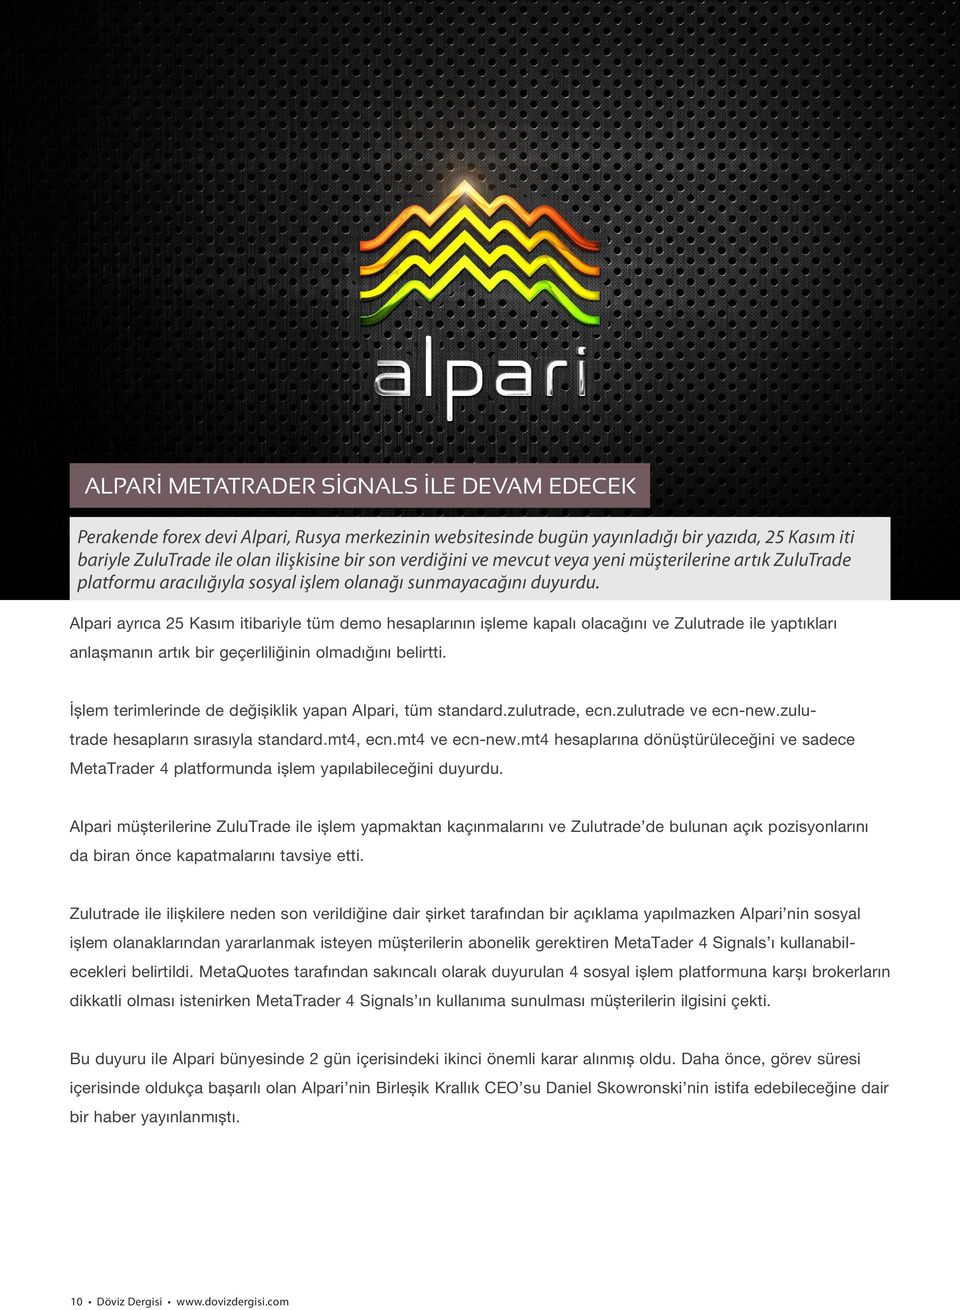 Alpari ayrıca 25 Kasım itibariyle tüm demo hesaplarının işleme kapalı olacağını ve Zulutrade ile yaptıkları anlaşmanın artık bir geçerliliğinin olmadığını belirtti.